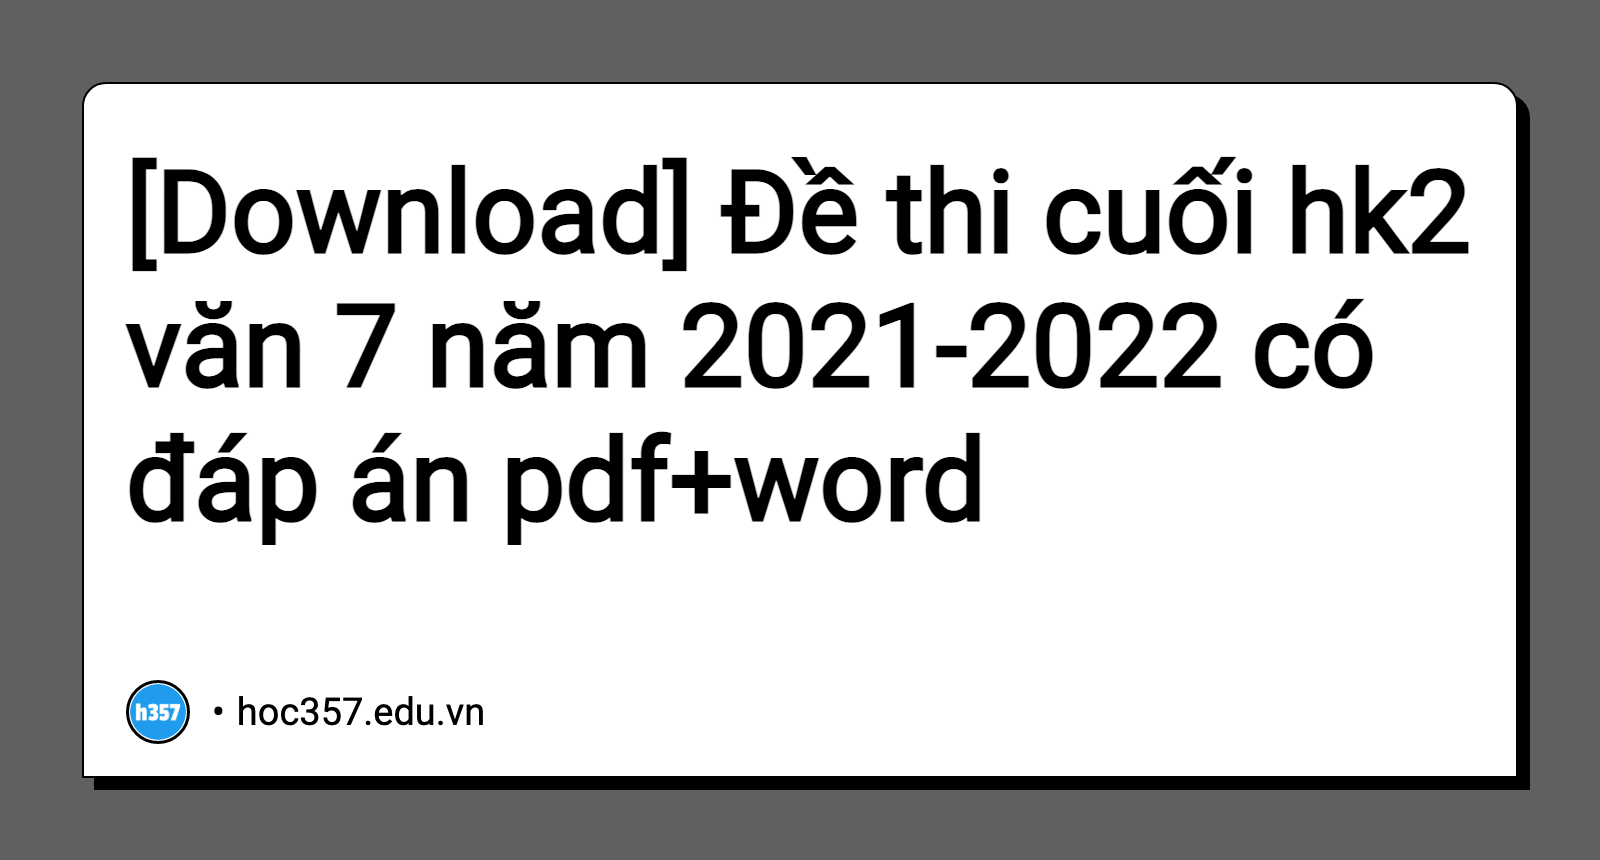 Hình minh họa Đề thi cuối hk2 văn 7 năm 2021-2022 có đáp án